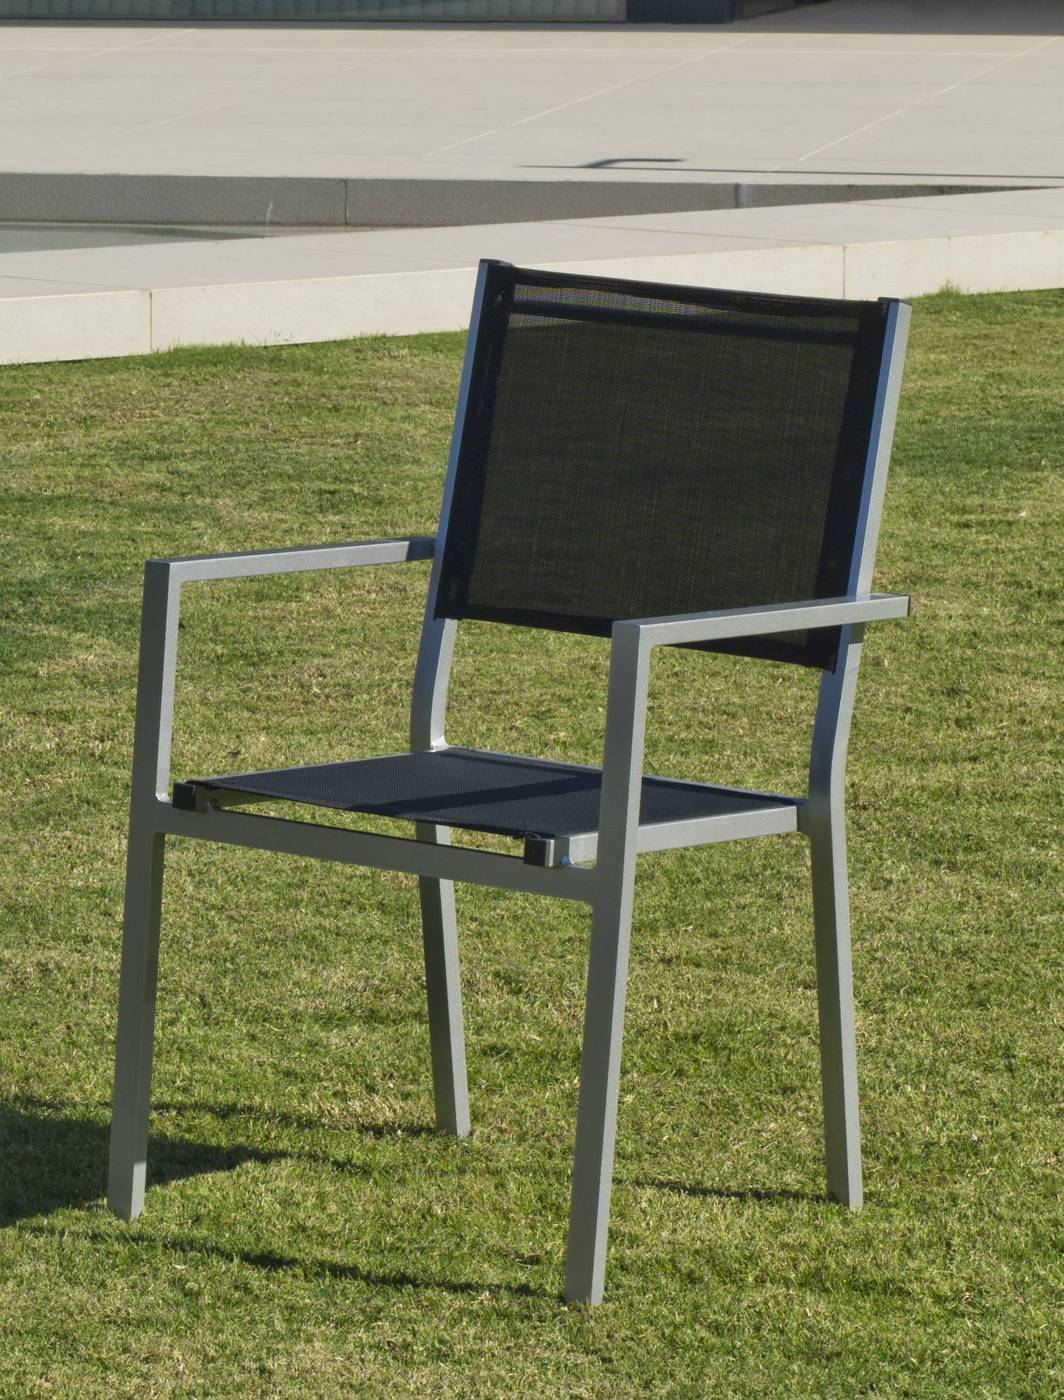 Set Aluminio Melea-Córcega 80-4 - Conjunto aluminio para jardín: Mesa cuadrada de 80 cm. + 4 sillones de aluminio y textilen. Disponible en color blanco, plata y antracita.